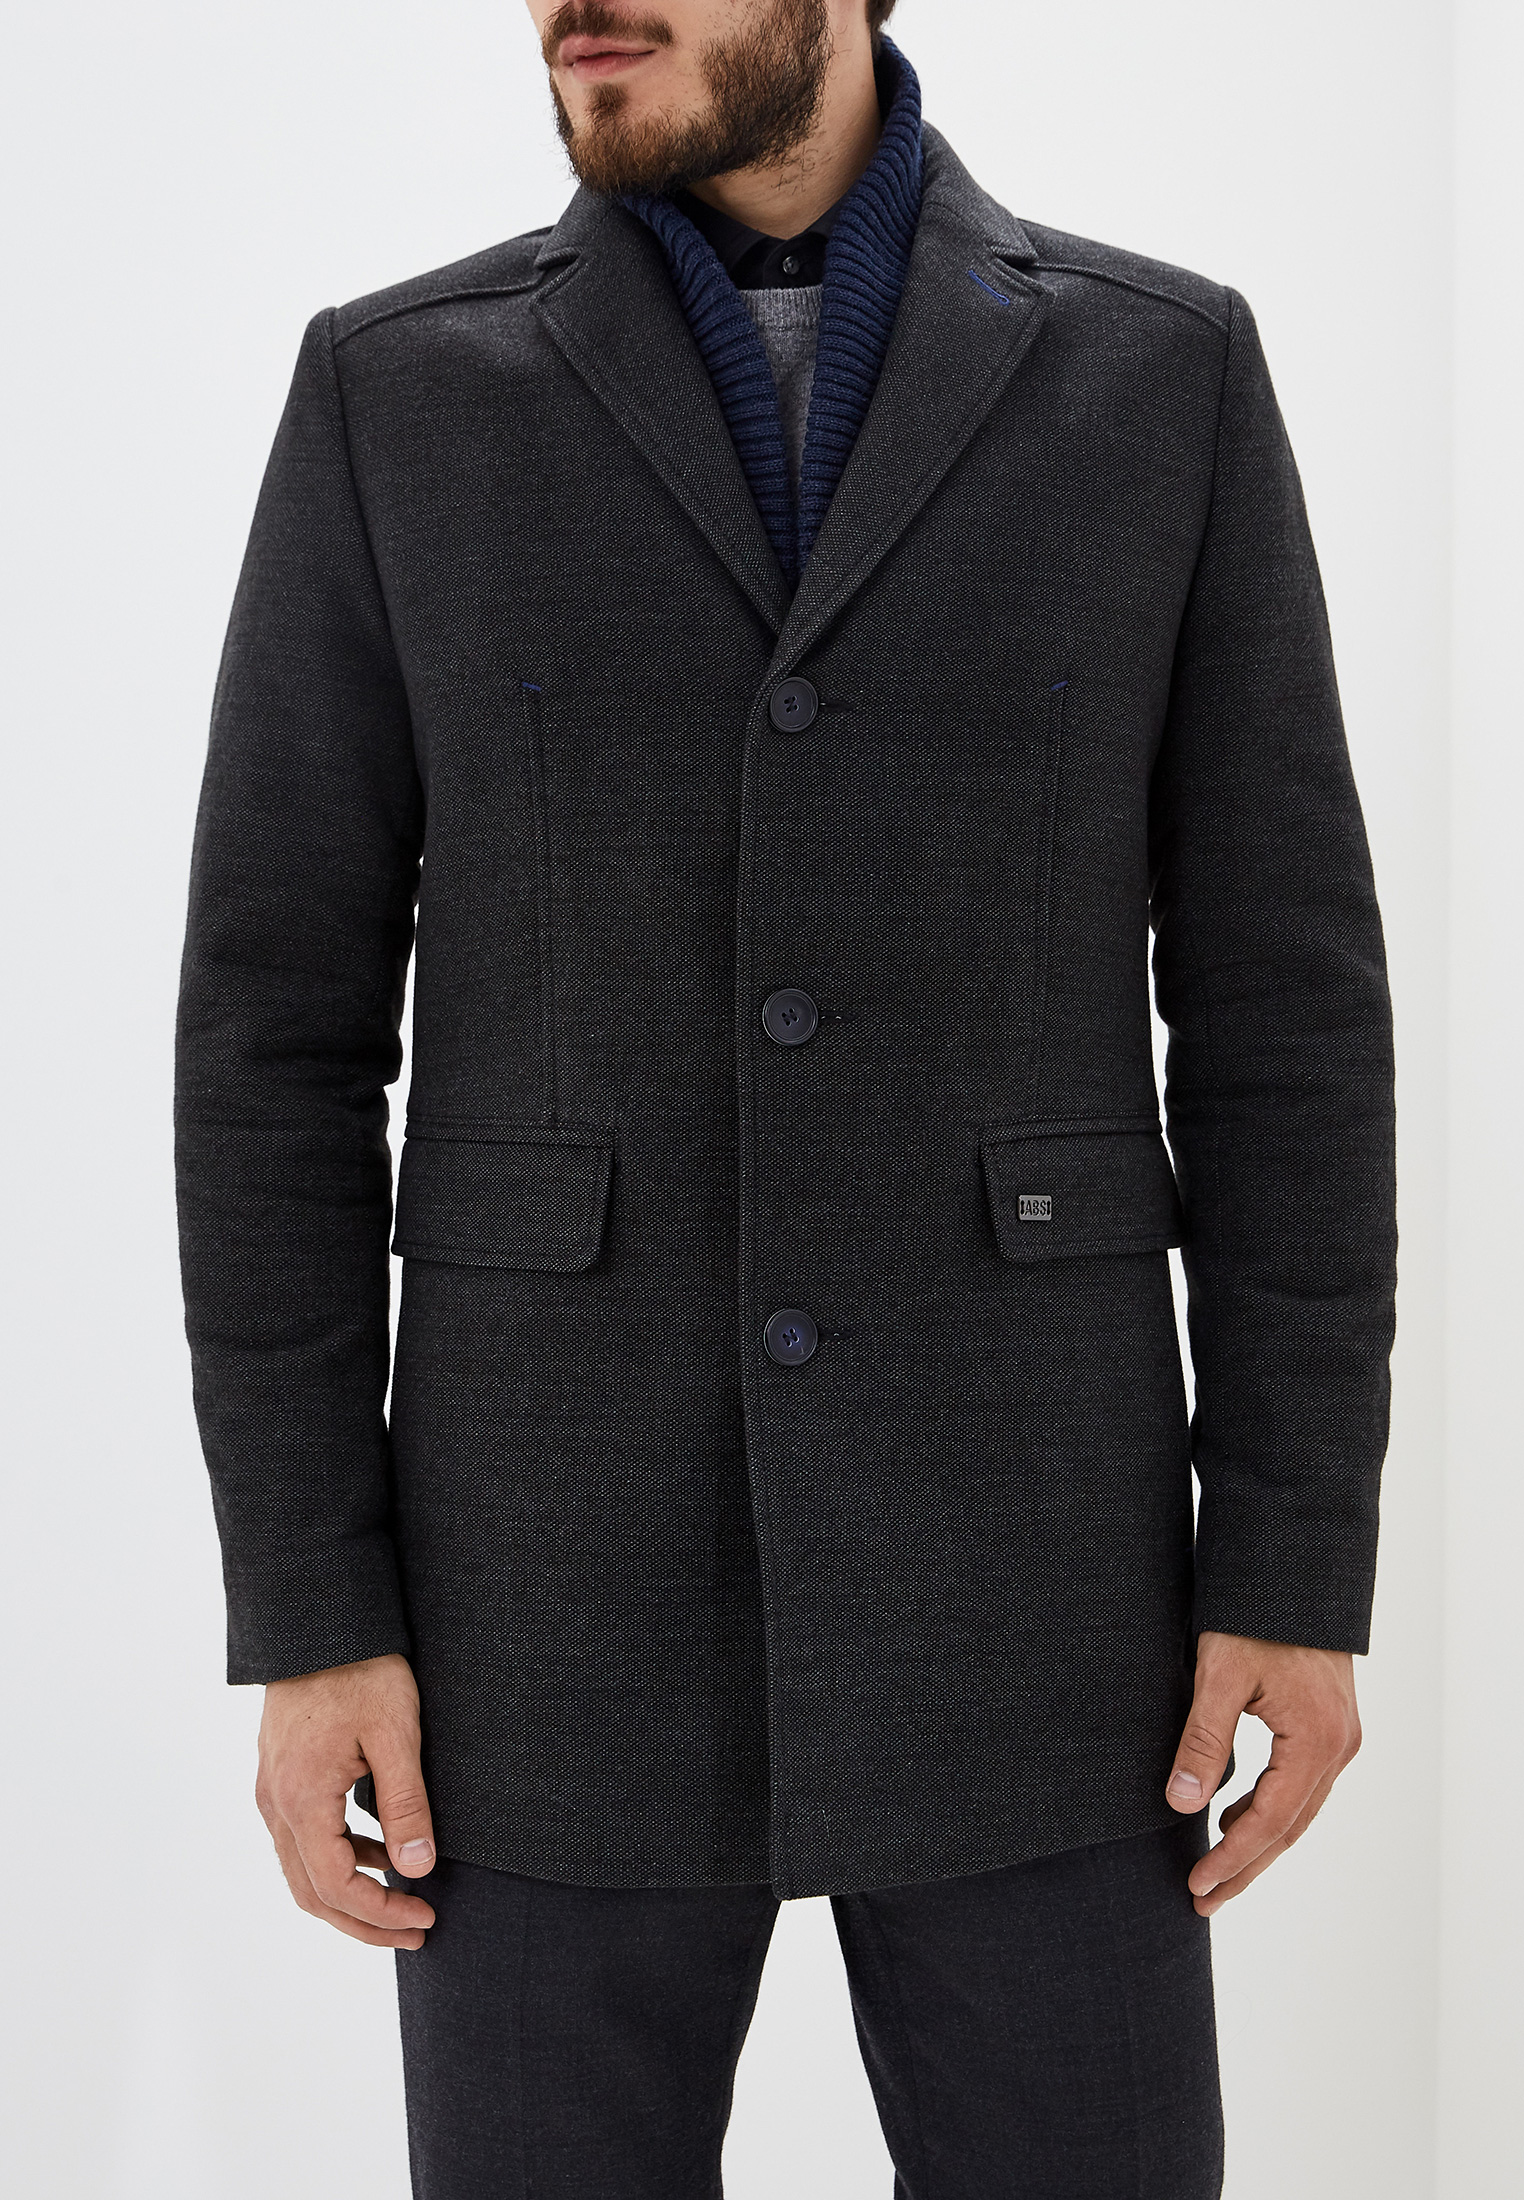 Absolutex. Пальто мужское ABSOLUTEX Exclusive модель 790кру. ABSOLUTEX пальто мужское. ABSOLUTEX Exclusive пальто мужское. ABSOLUTEX Exclusive пальто мужское коденый.